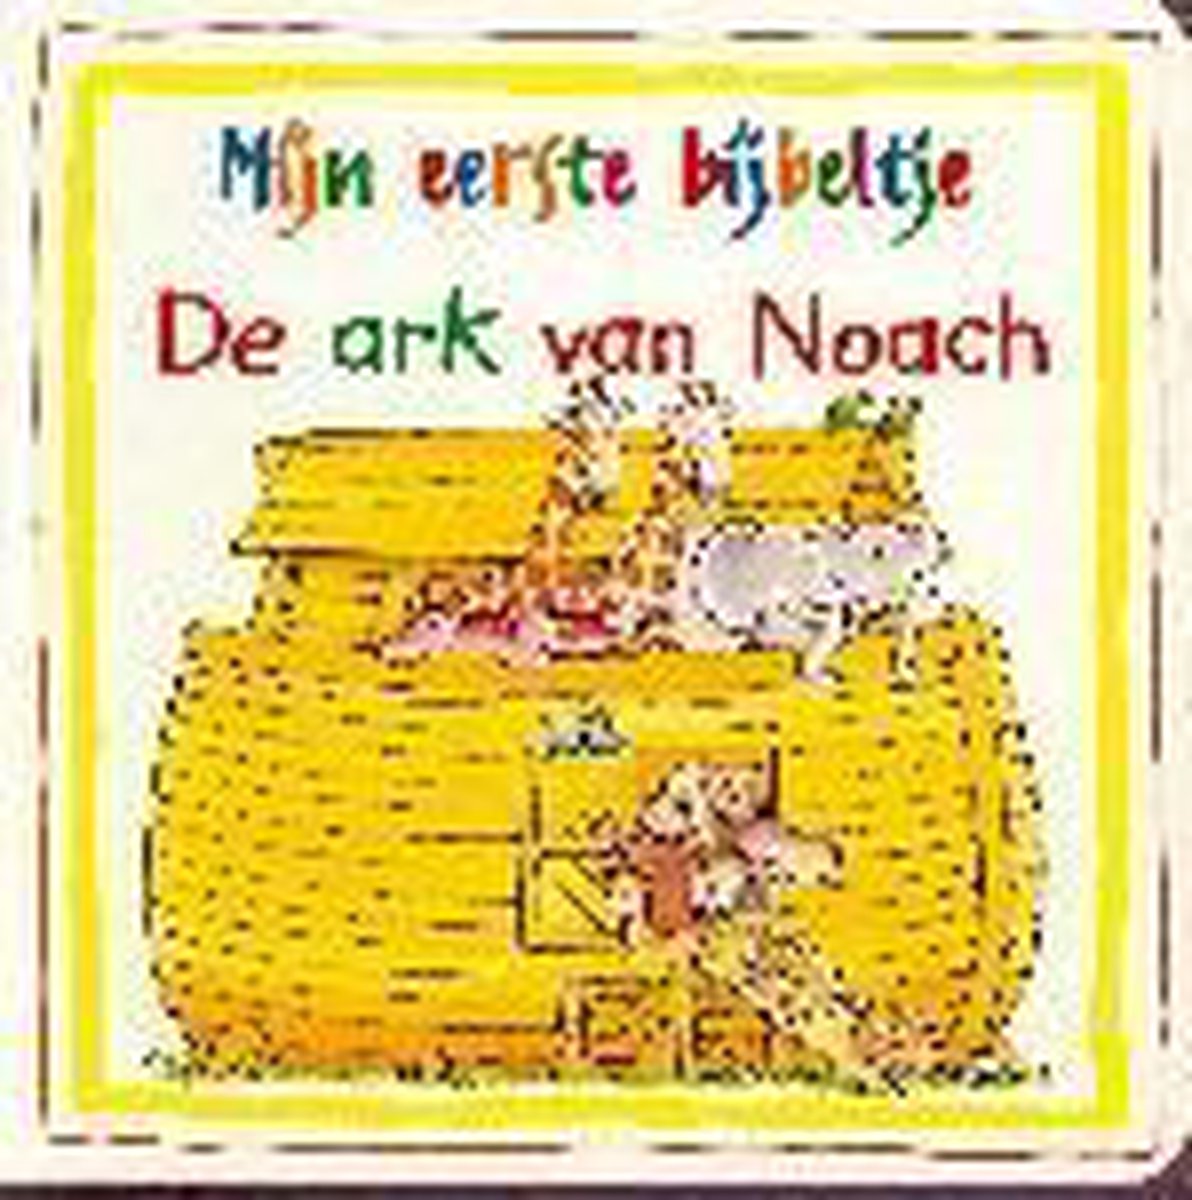 De ark van Noach / Mijn eerste bijbeltje